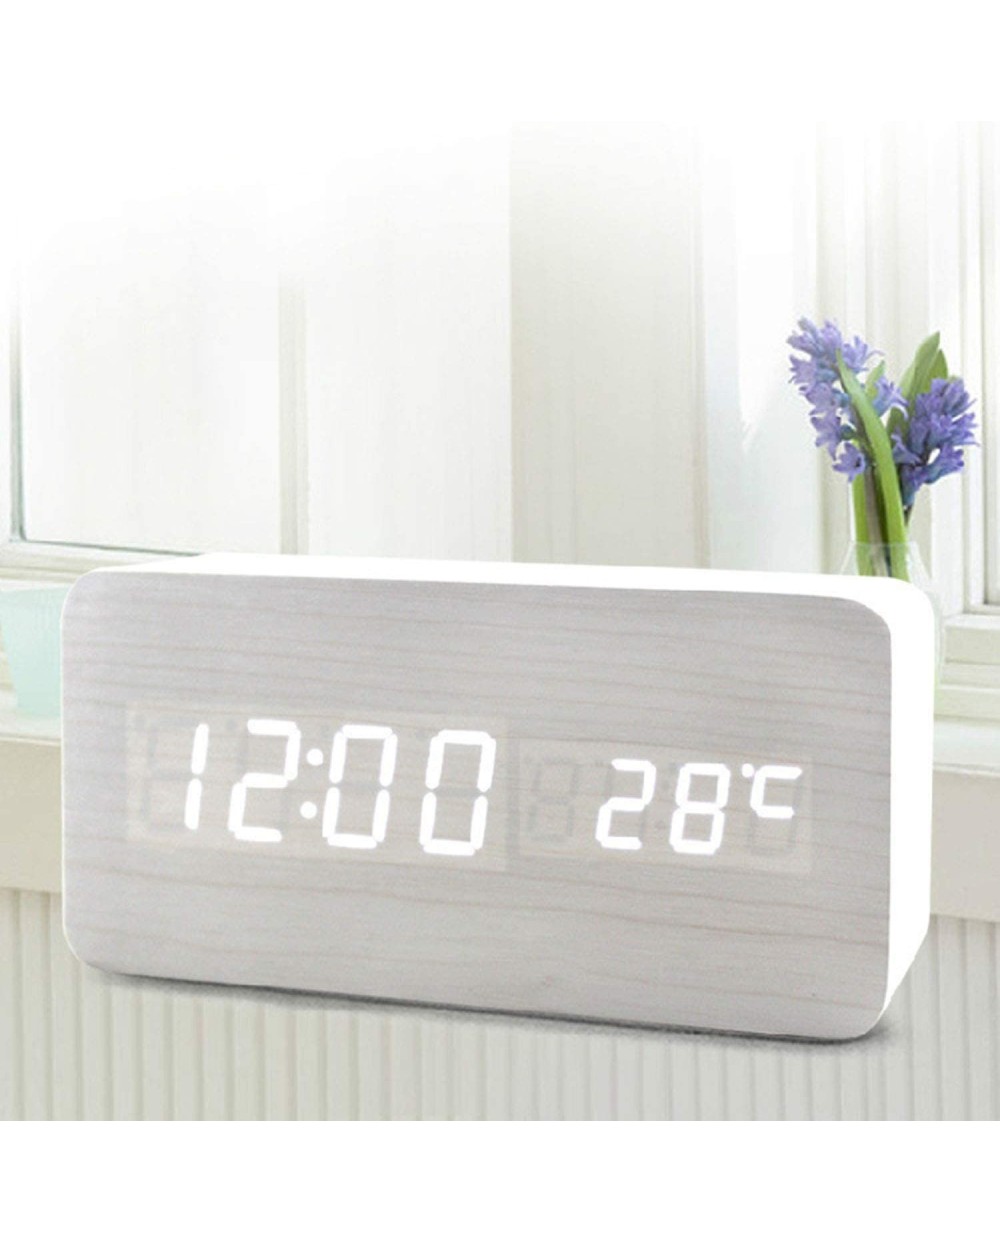 Ξύλινο Ρολόι με Αισθητήρα Ήχου και Δόνησης-Ημερολόγιο & Θερμόμετρο Wooden Clock OEM - Παραλ/μο